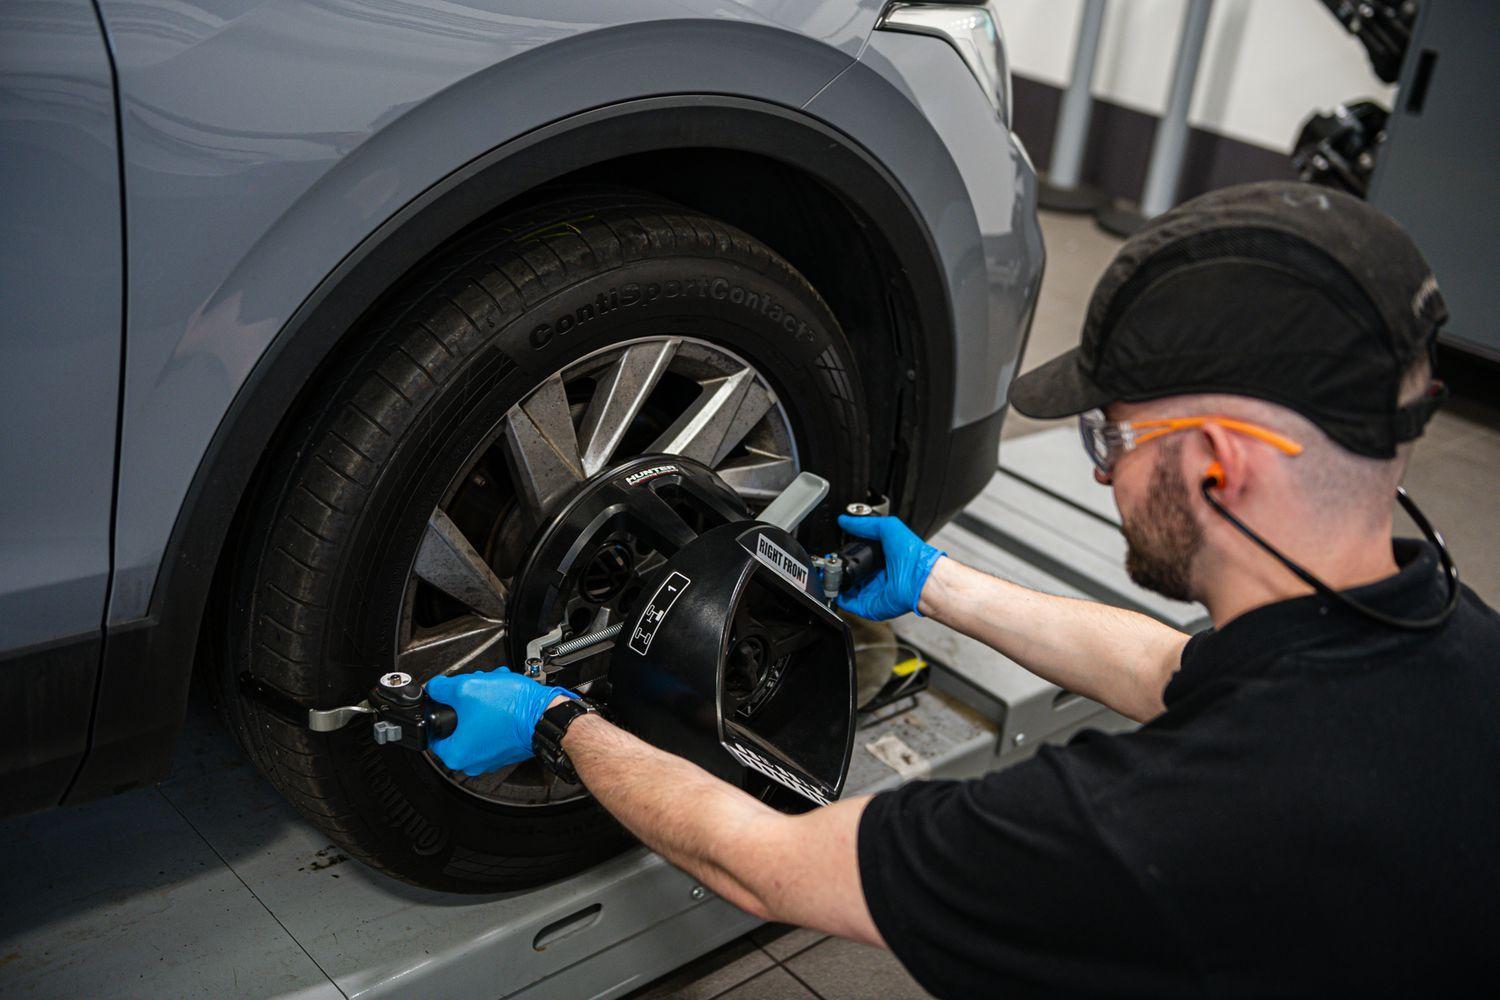 Volkswagen Technician inspects wheel of Volkswagen vehicle during repair work